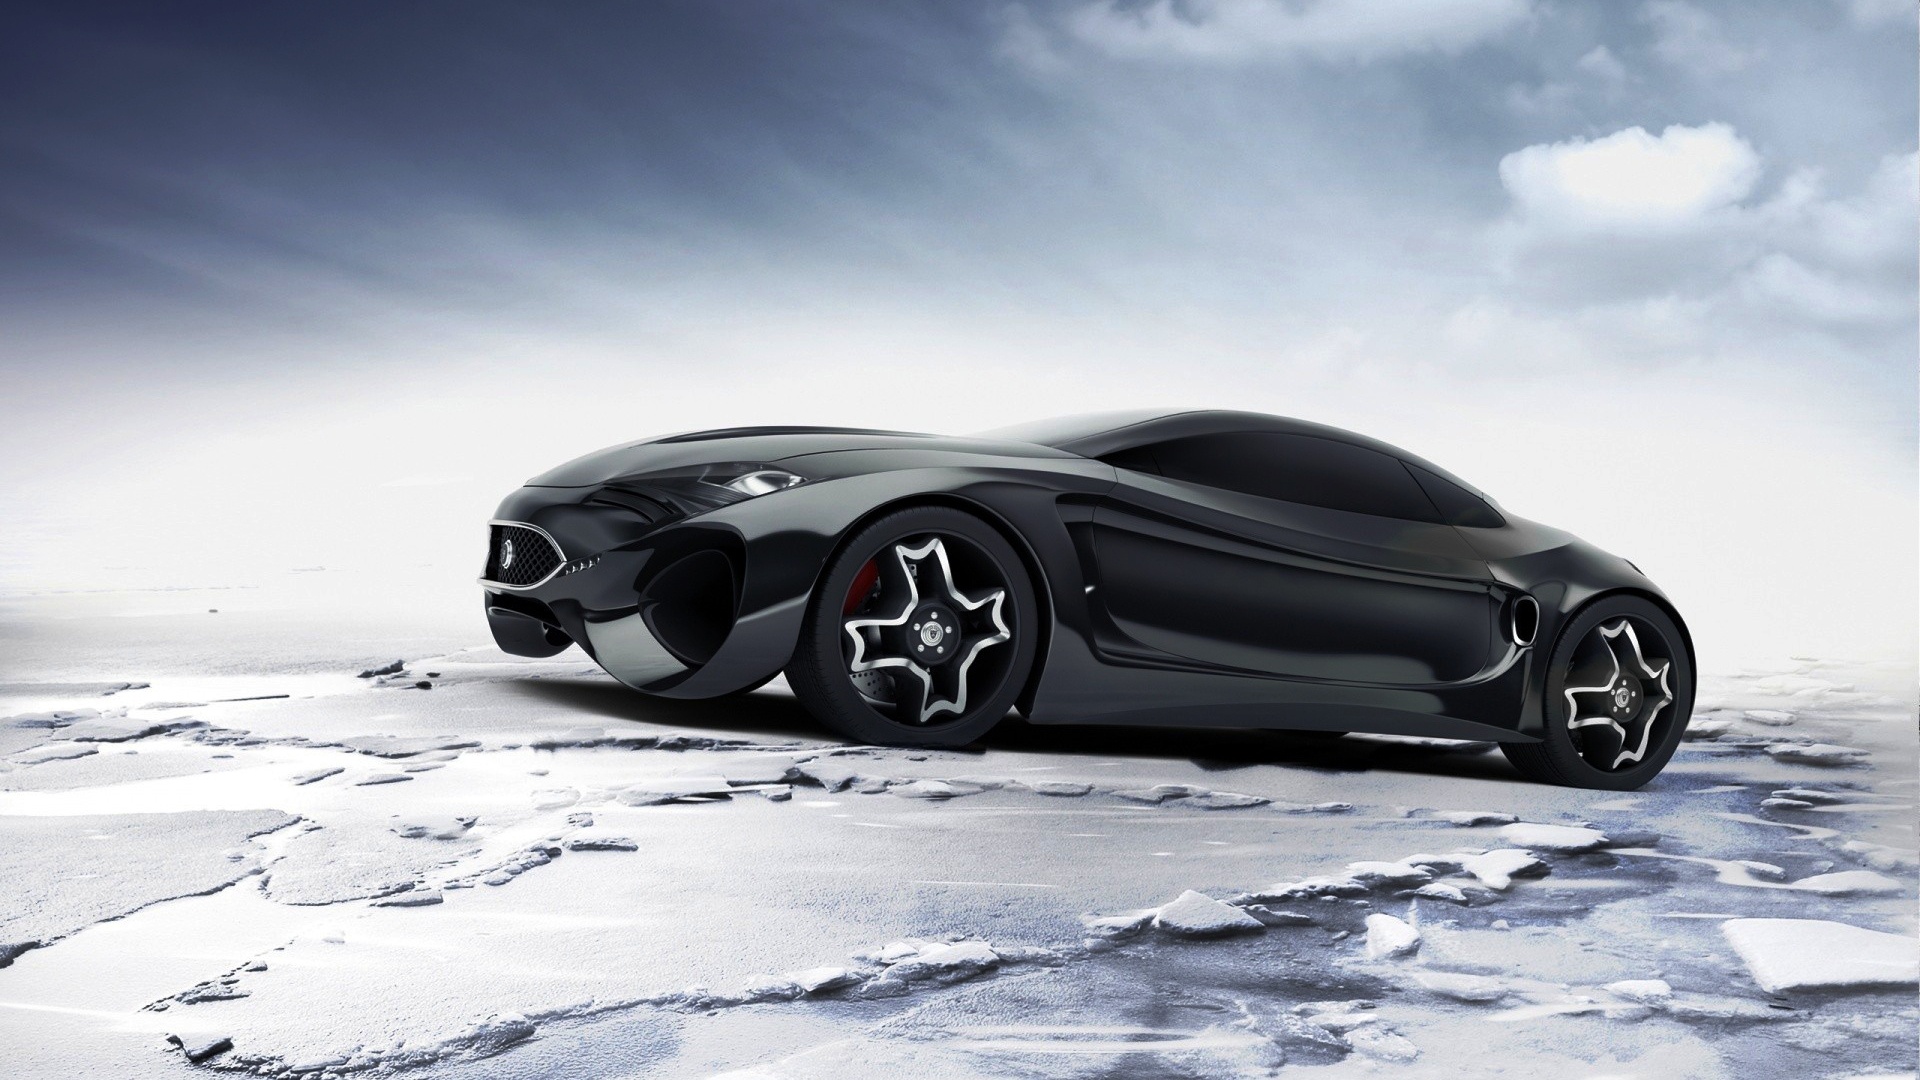 voiture jaguar noire fonds d'écran hd,véhicule,voiture,supercar,prototype de voiture,voiture de luxe personnelle